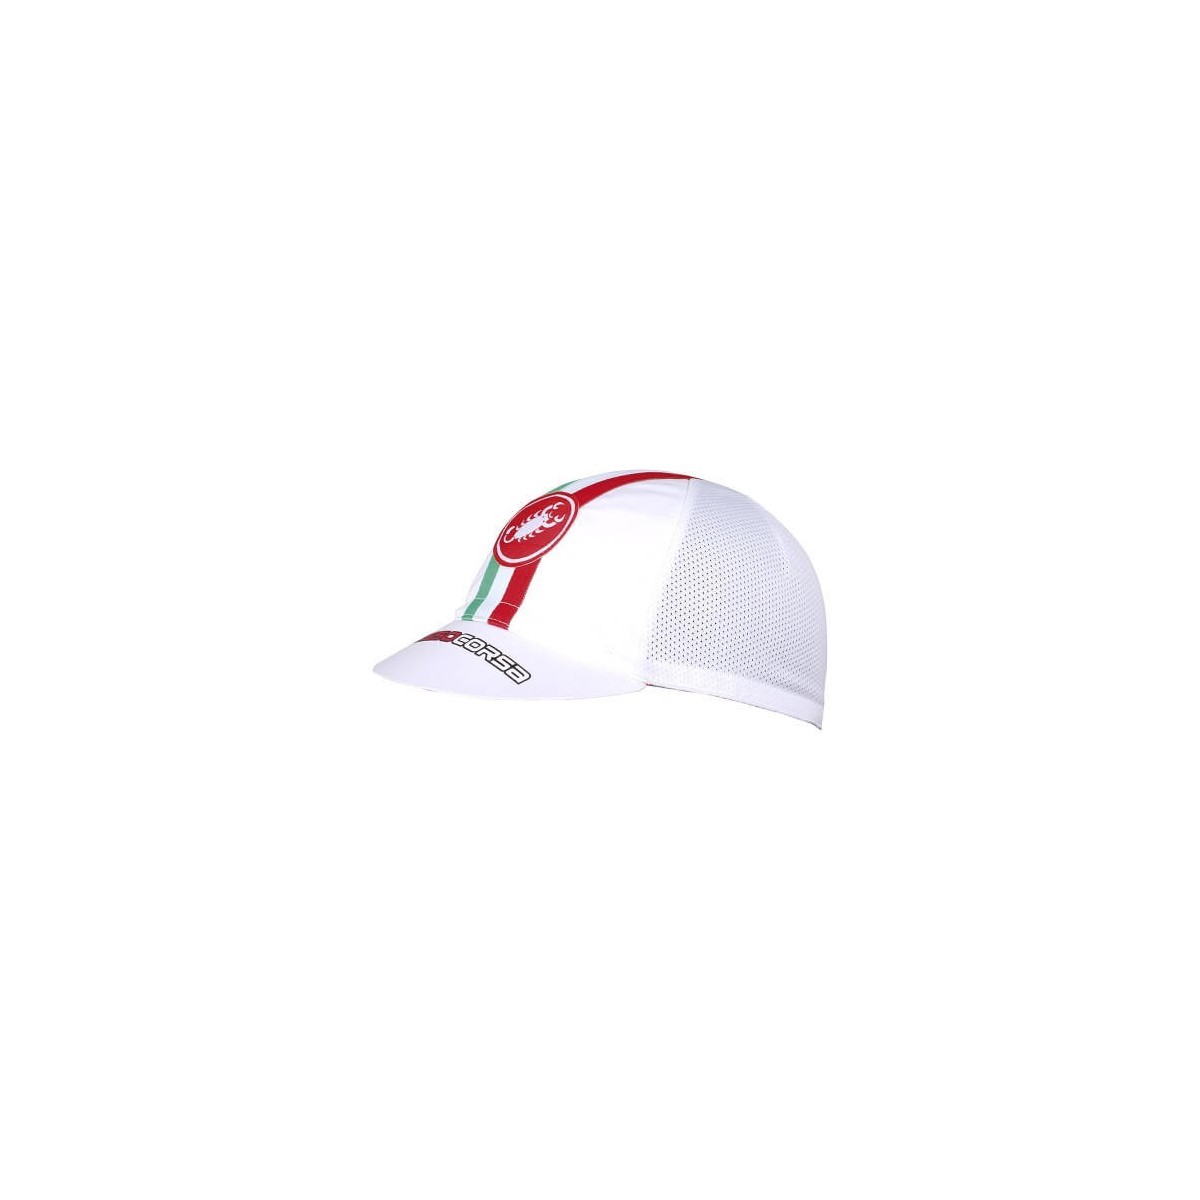 Perfekt günstig Kaufen-Castelli Performance White Cap. Castelli Performance White Cap <![CDATA[Es besteht aus einem hoch atmungsaktiven Material und eignet sich perfekt für einen lässigen Stil oder zum Tragen im Radsporttraining unter dem Helm.]]>. 